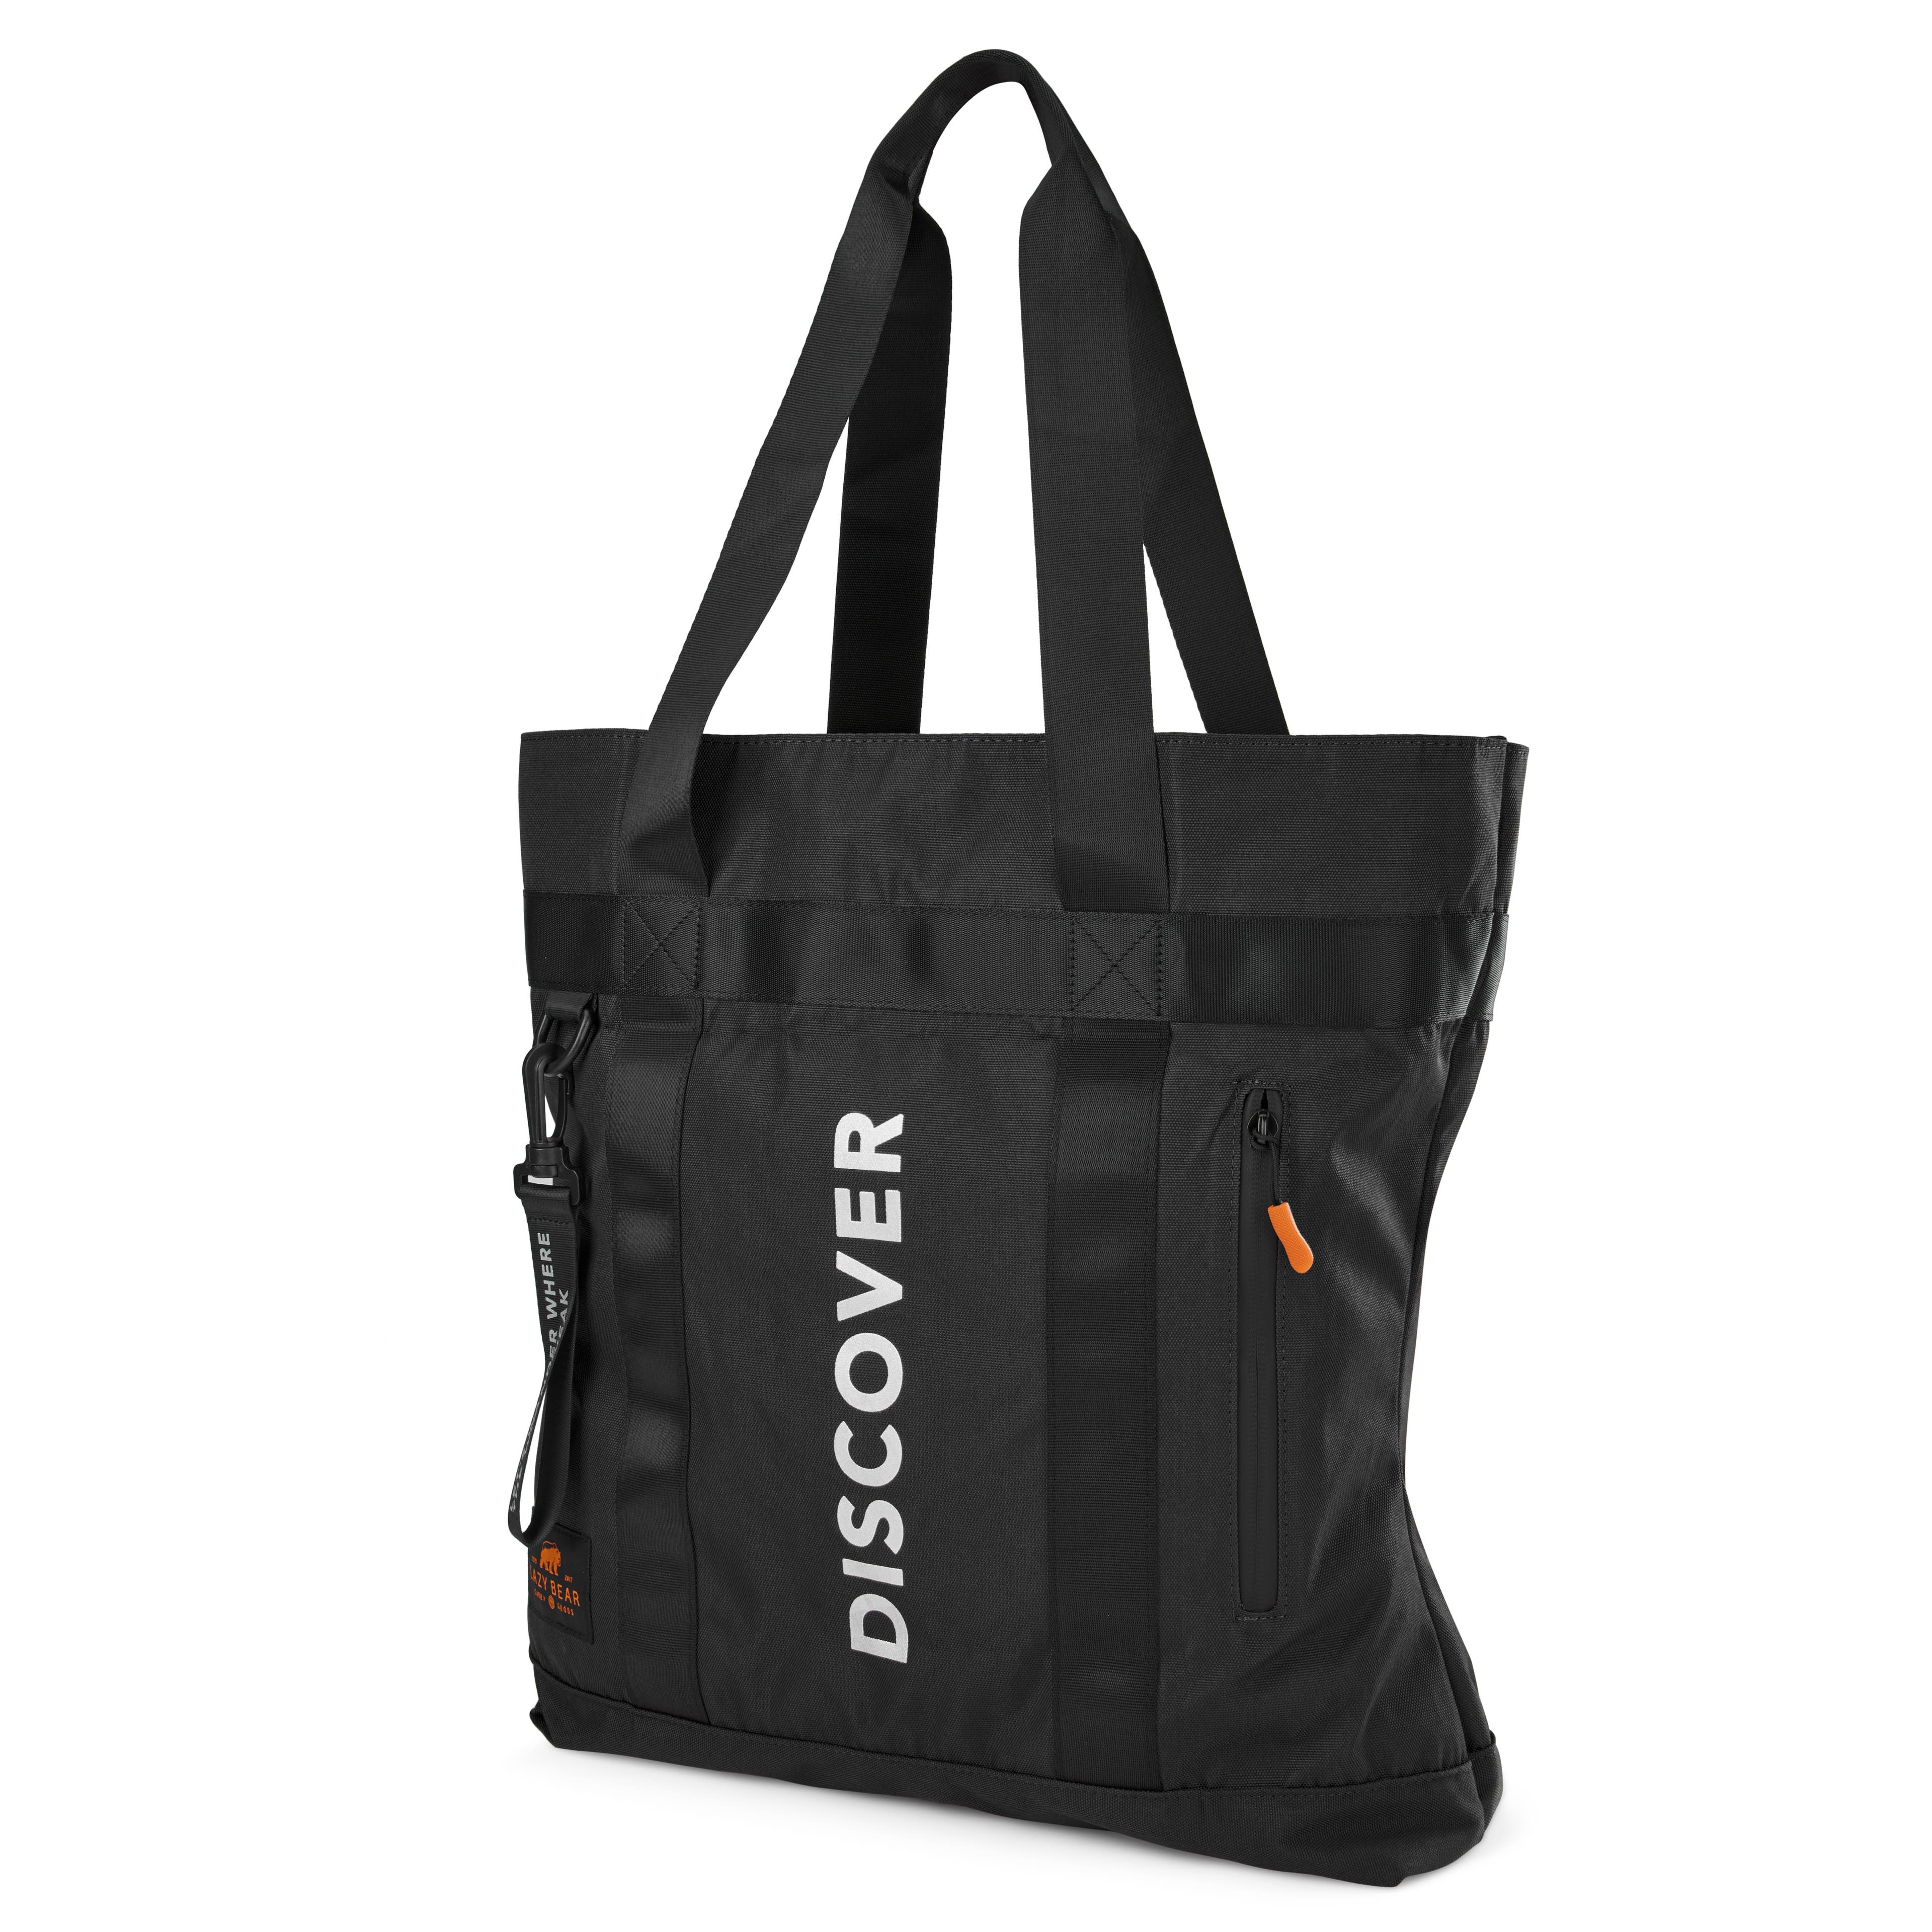 Lamair Black Discover Foldable Tote Bag